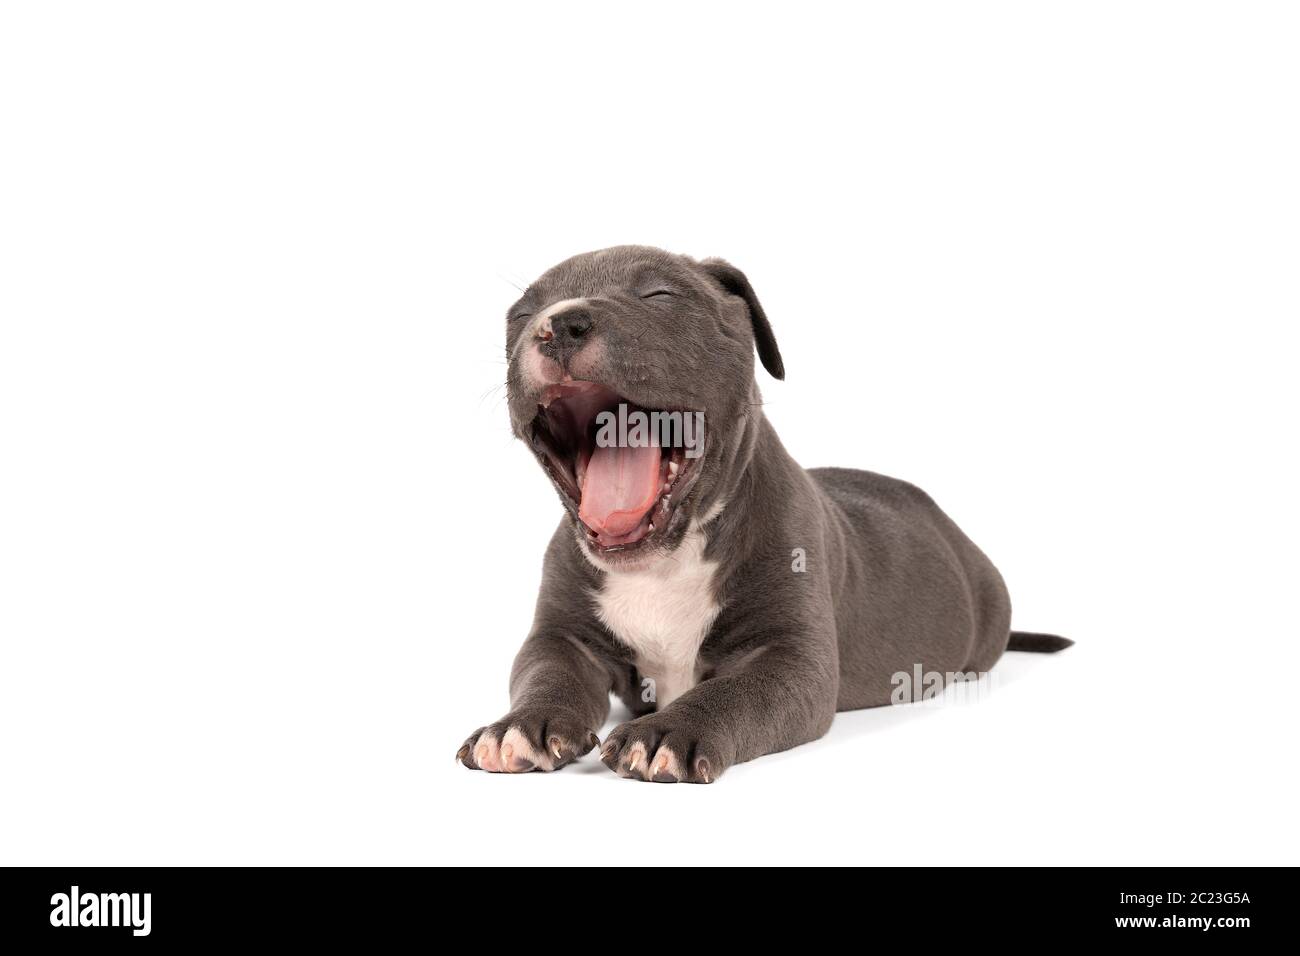 Un pup américain de Bully ou de Bulldog, fatigué et bâilleux, avec des fourrures bleues et blanches, isolées sur un fond blanc Banque D'Images